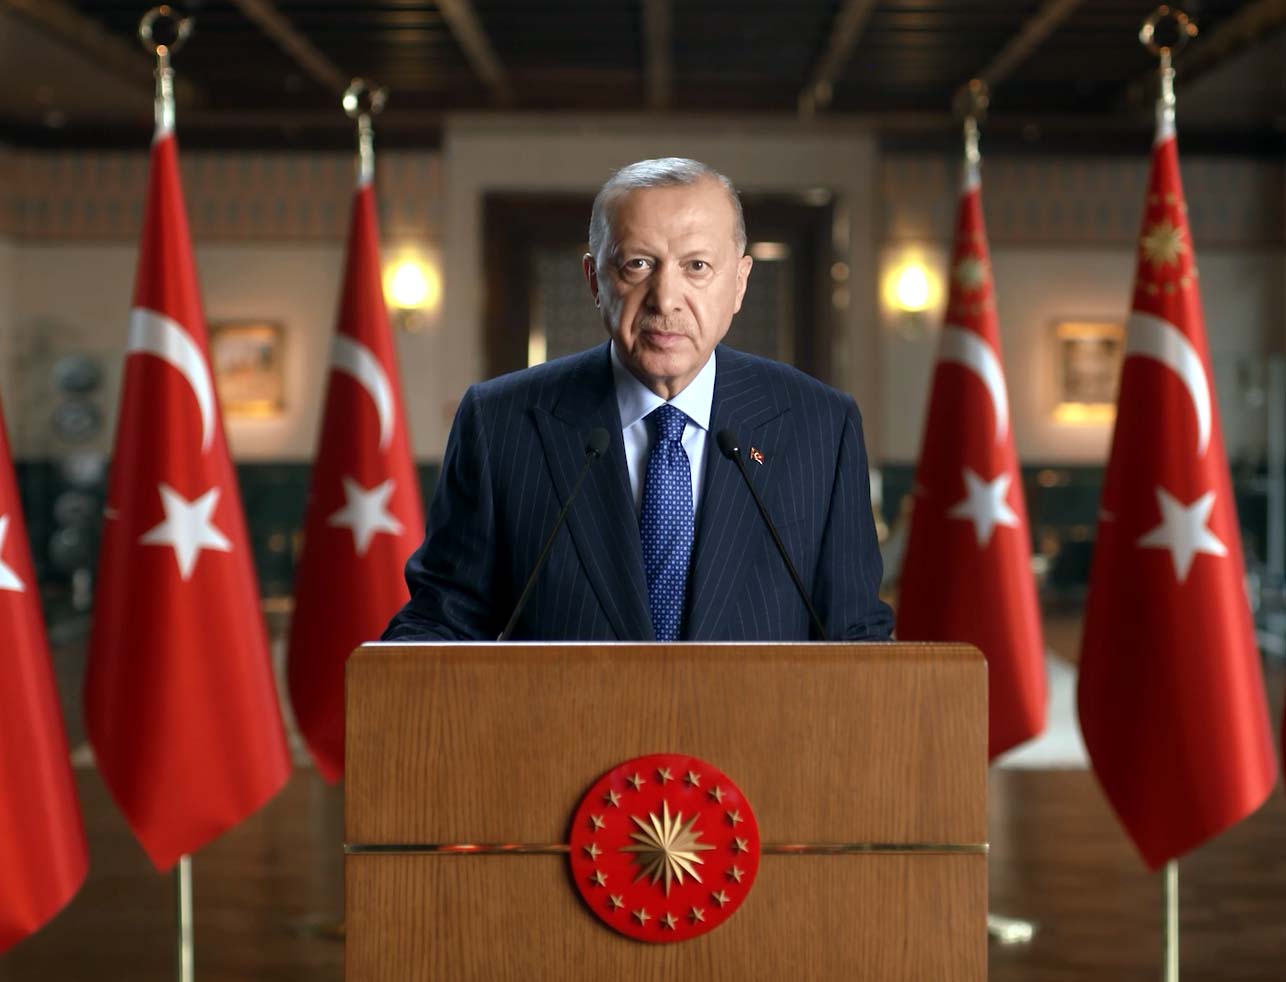 Erdoğan fahiş fiyat konusunda 5 zincir marketi işaret etti: "Piyasalar alt üst oluyor"